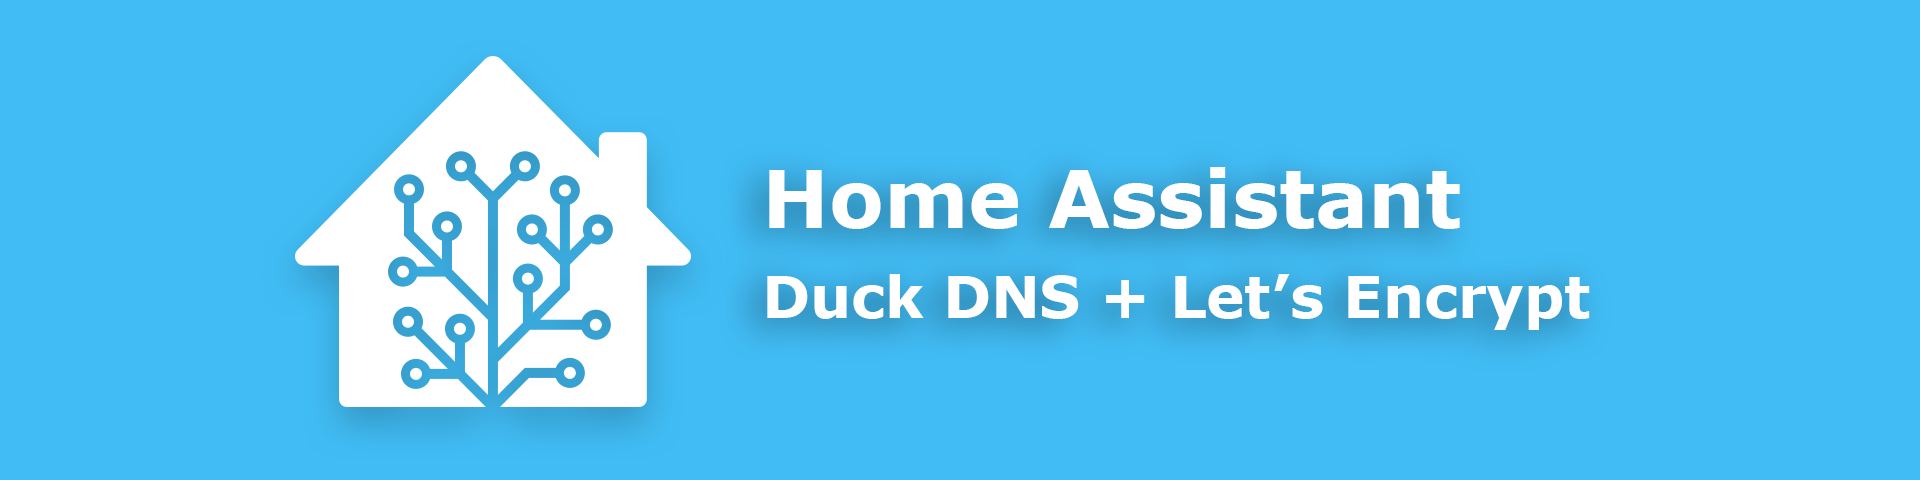 Controla tu casa desde cualquier sitio con DuckDNS